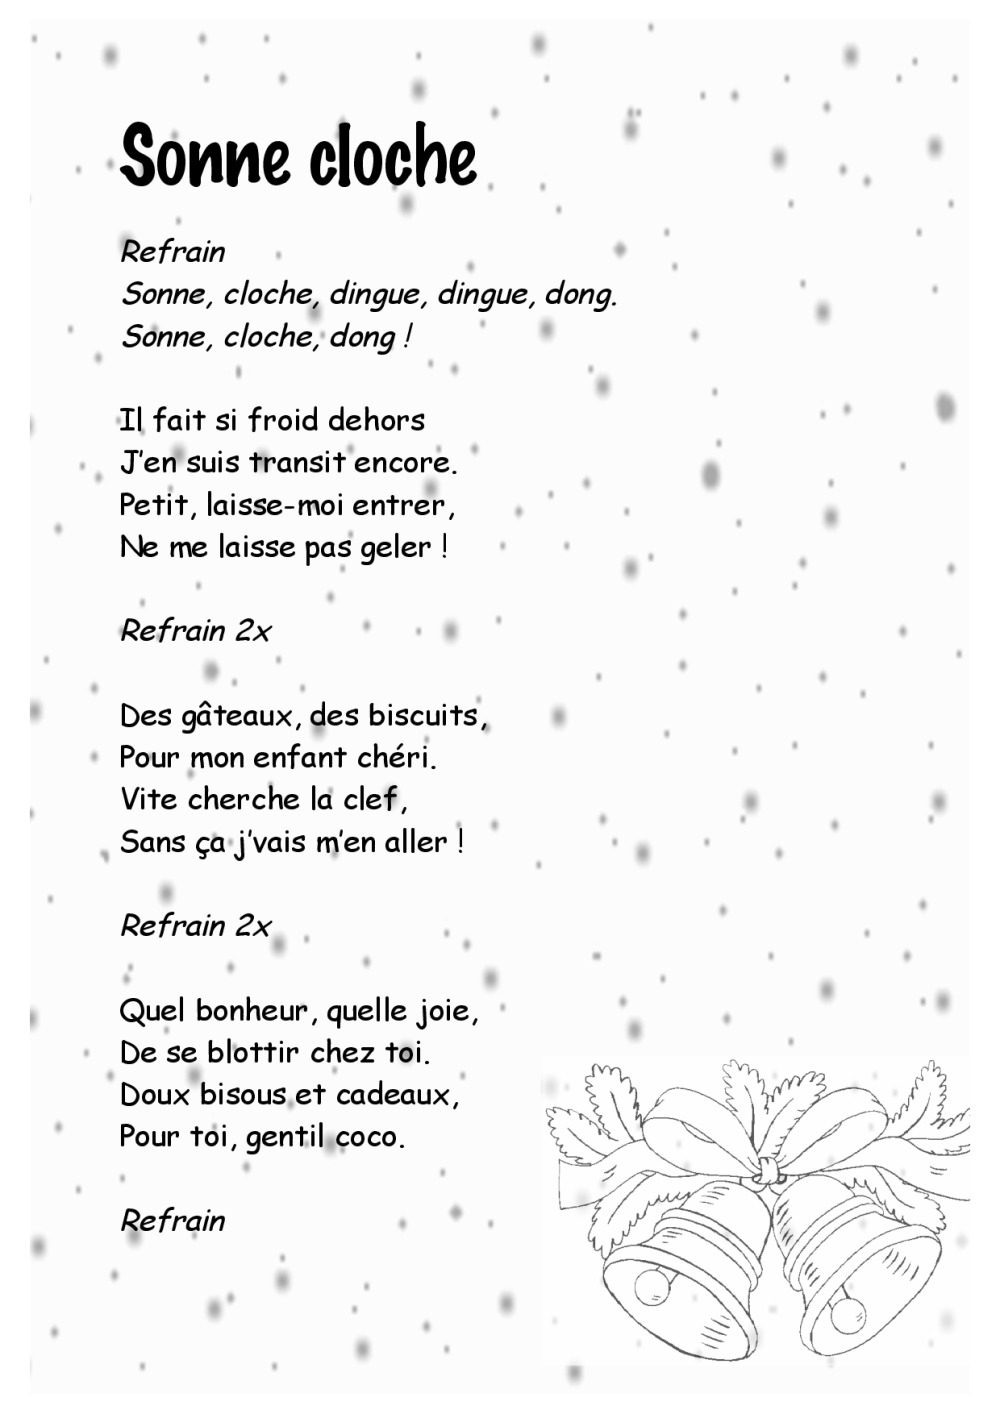 Paroles chansons de Noël, BDRP